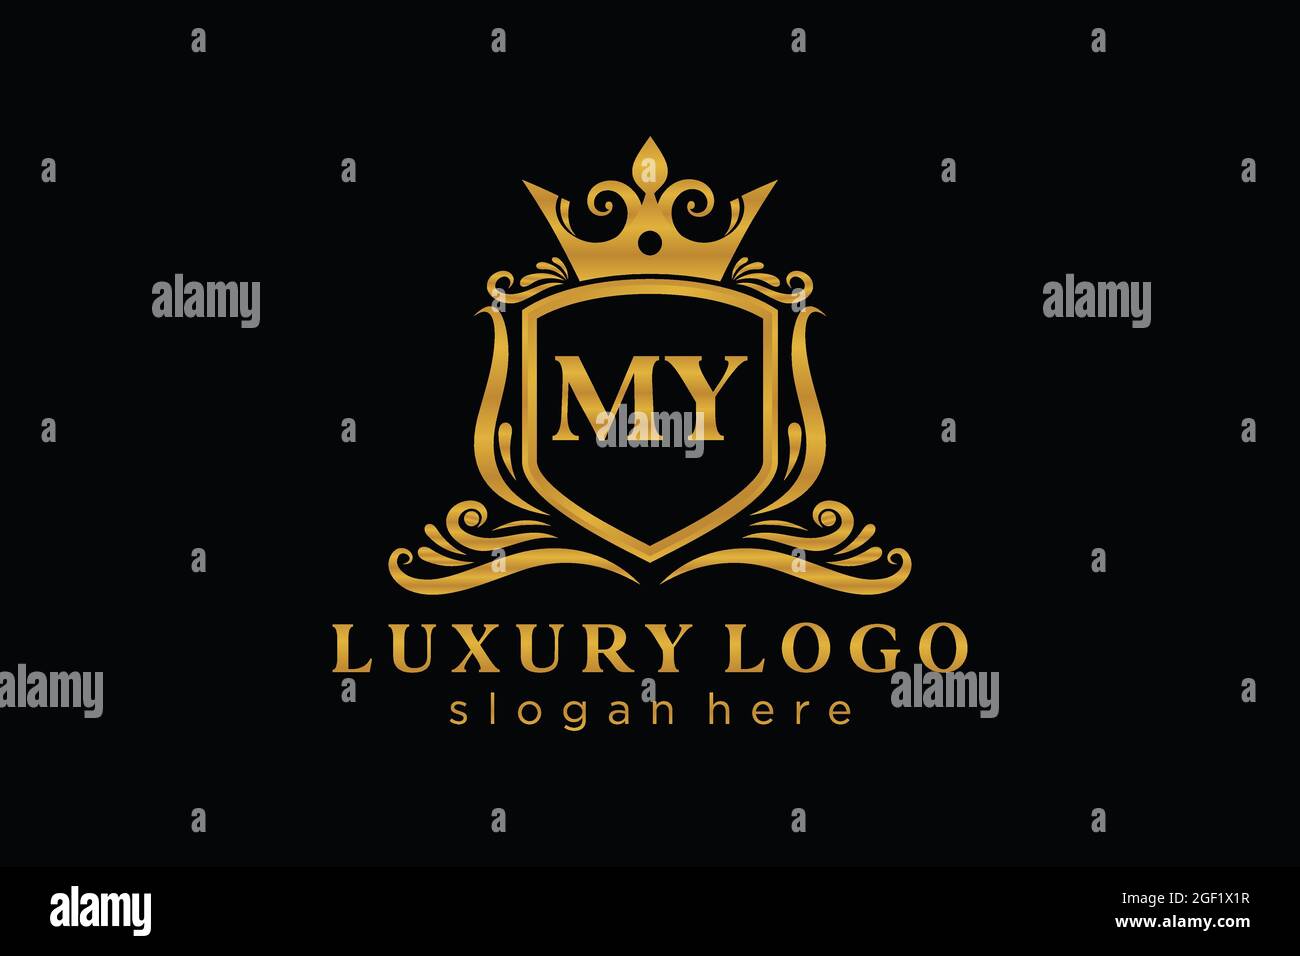 MY Letter Royal Luxury Logo Vorlage in Vektorgrafik für Restaurant, Royalty, Boutique, Cafe, Hotel, Heraldisch, Schmuck, Mode und andere Vektor illustrr Stock Vektor